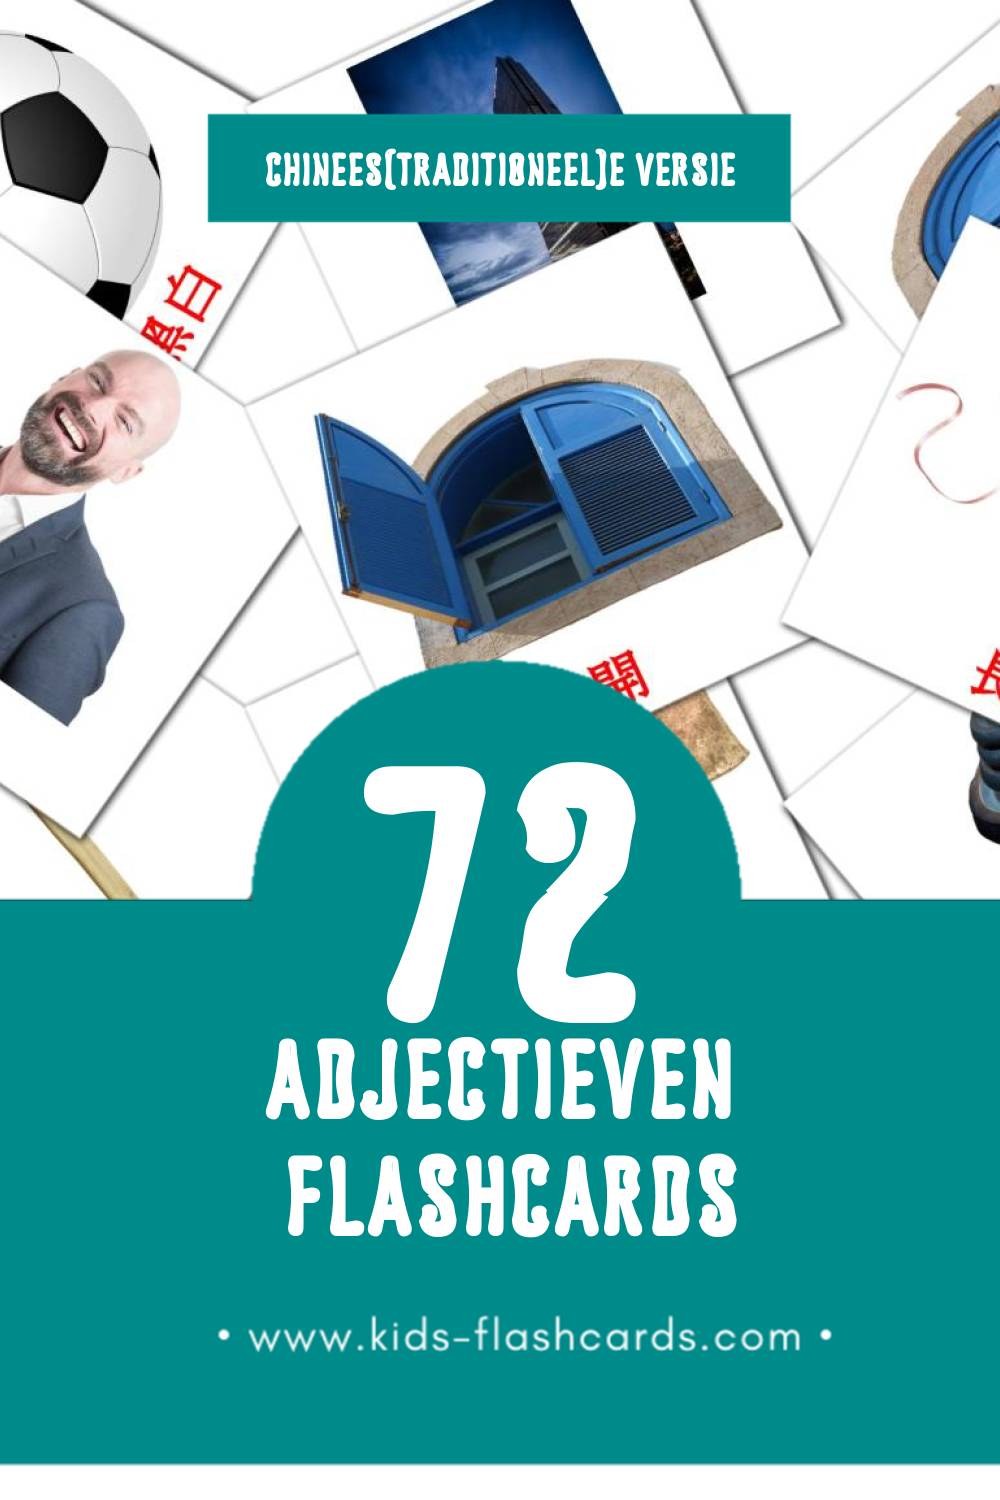 Visuele 形容詞 Flashcards voor Kleuters (72 kaarten in het Chinees(traditioneel))